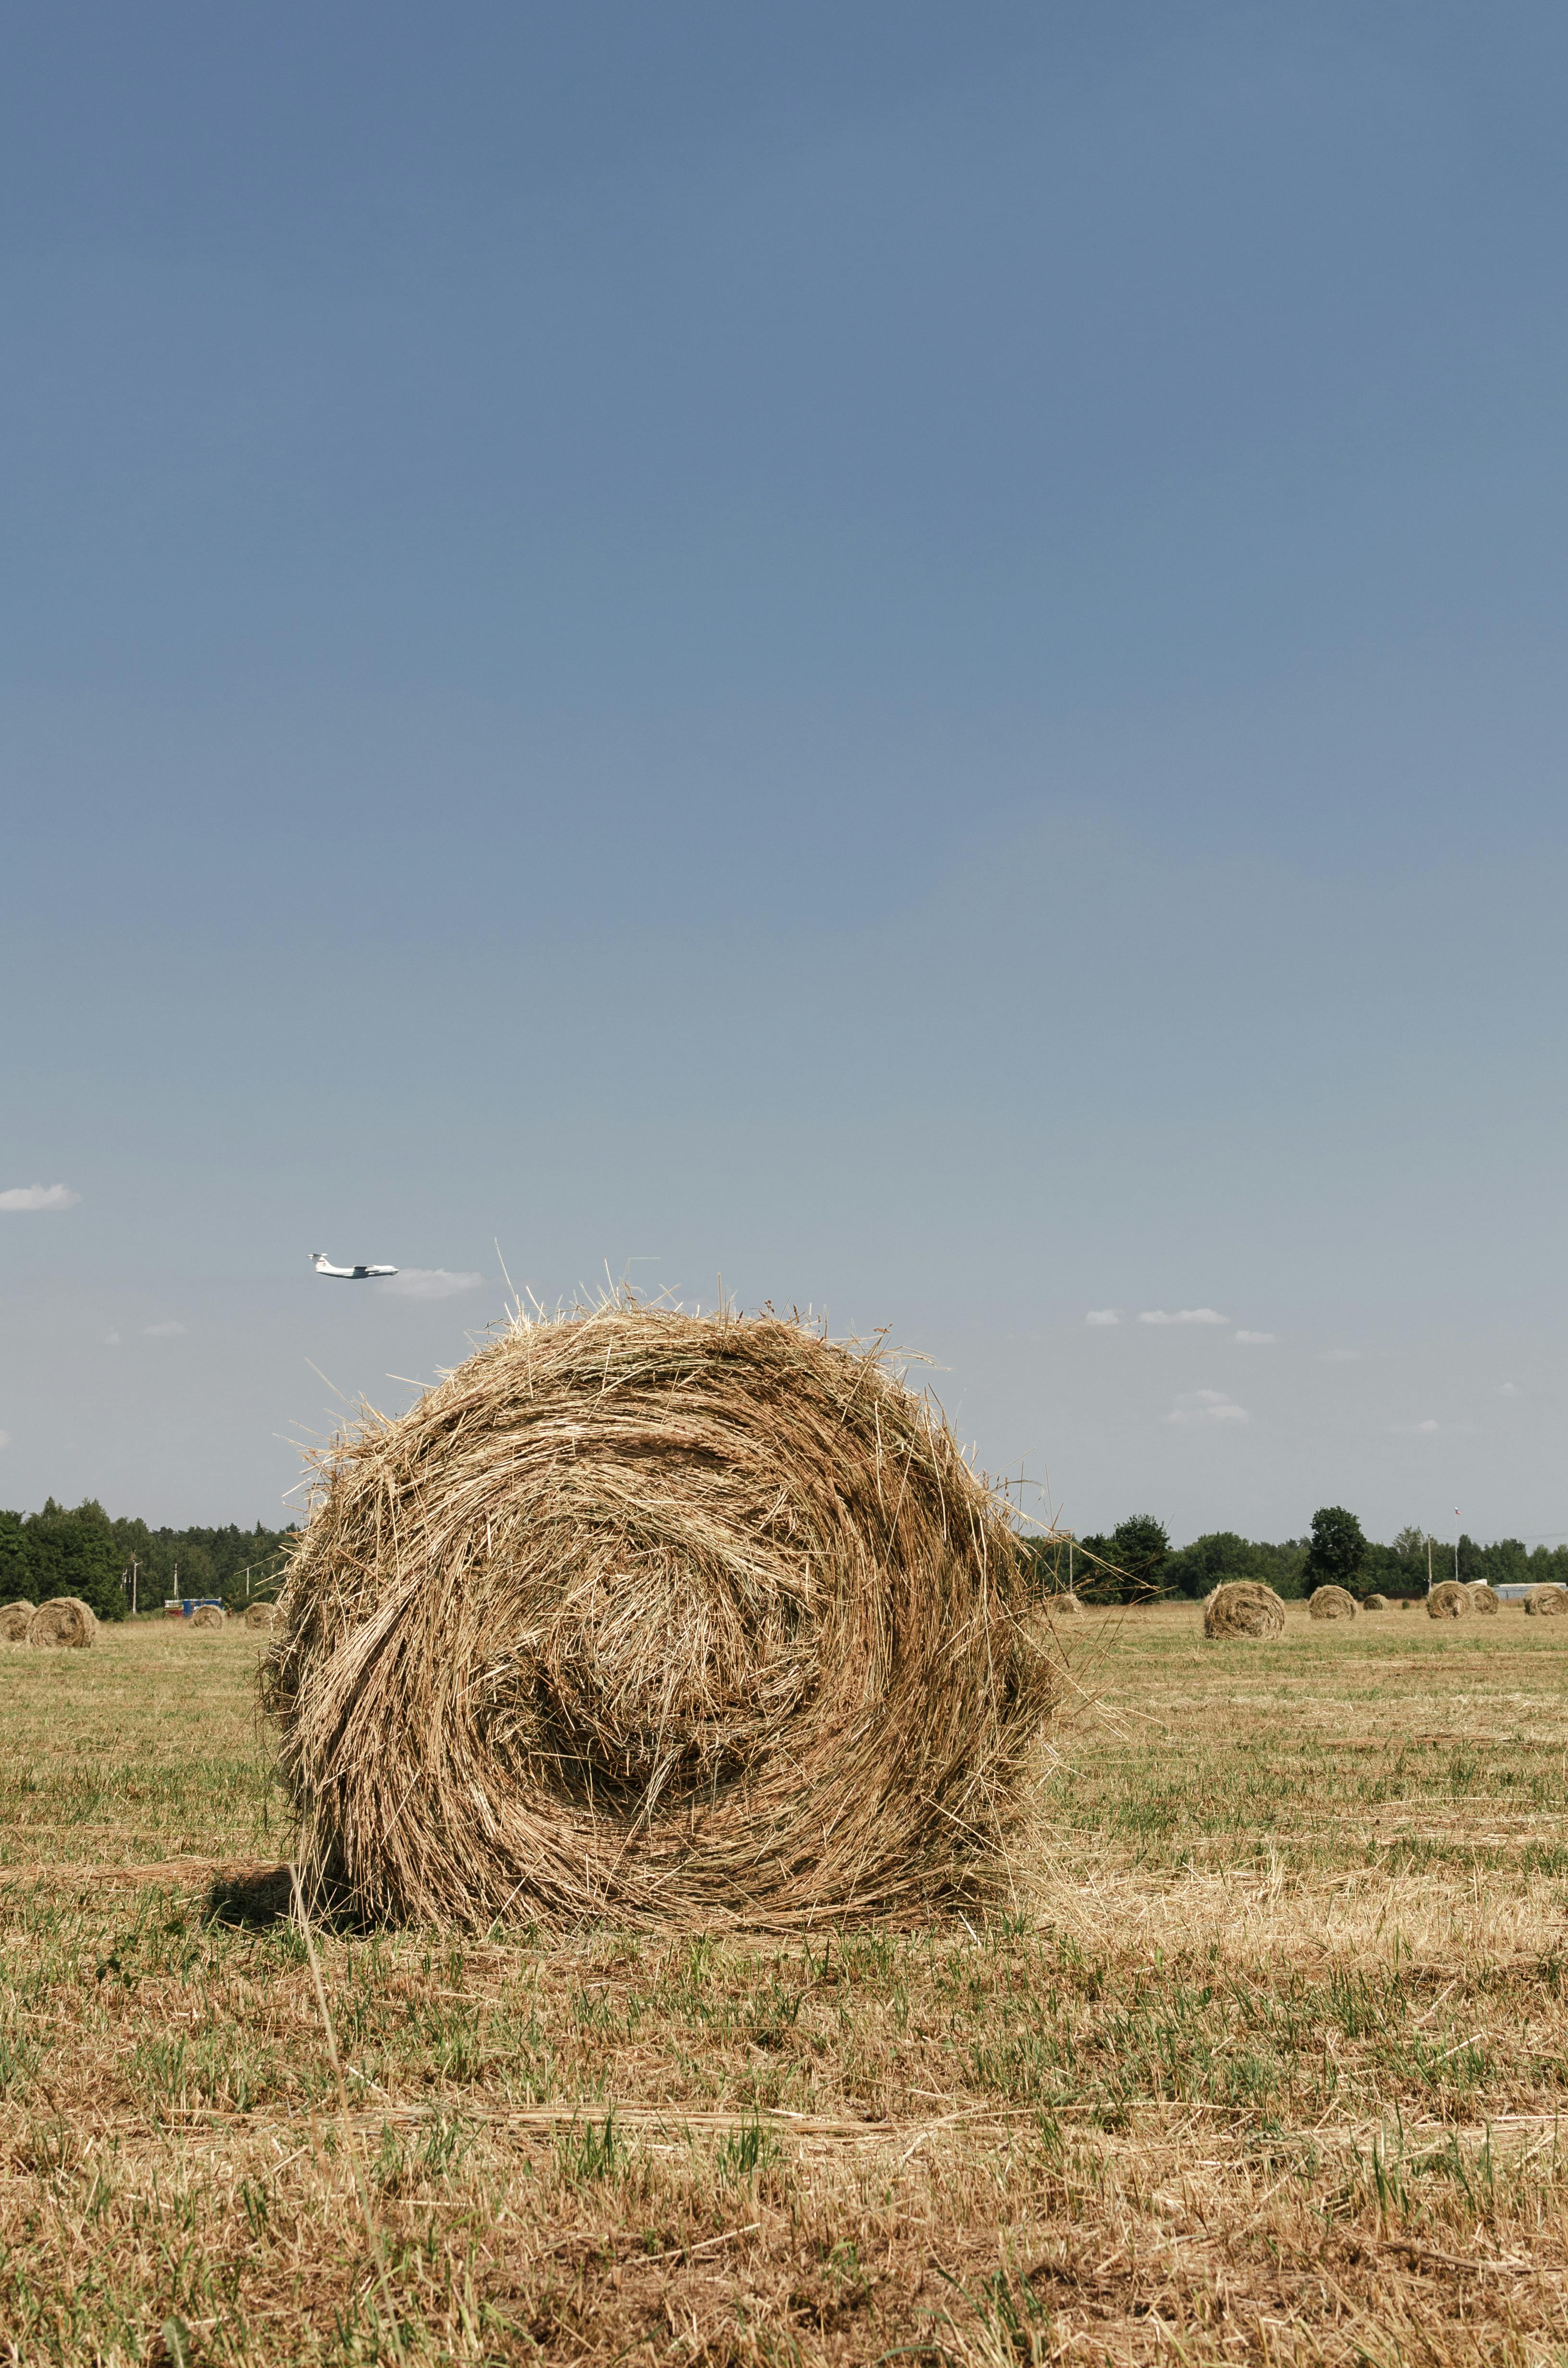 hay bales in an open field